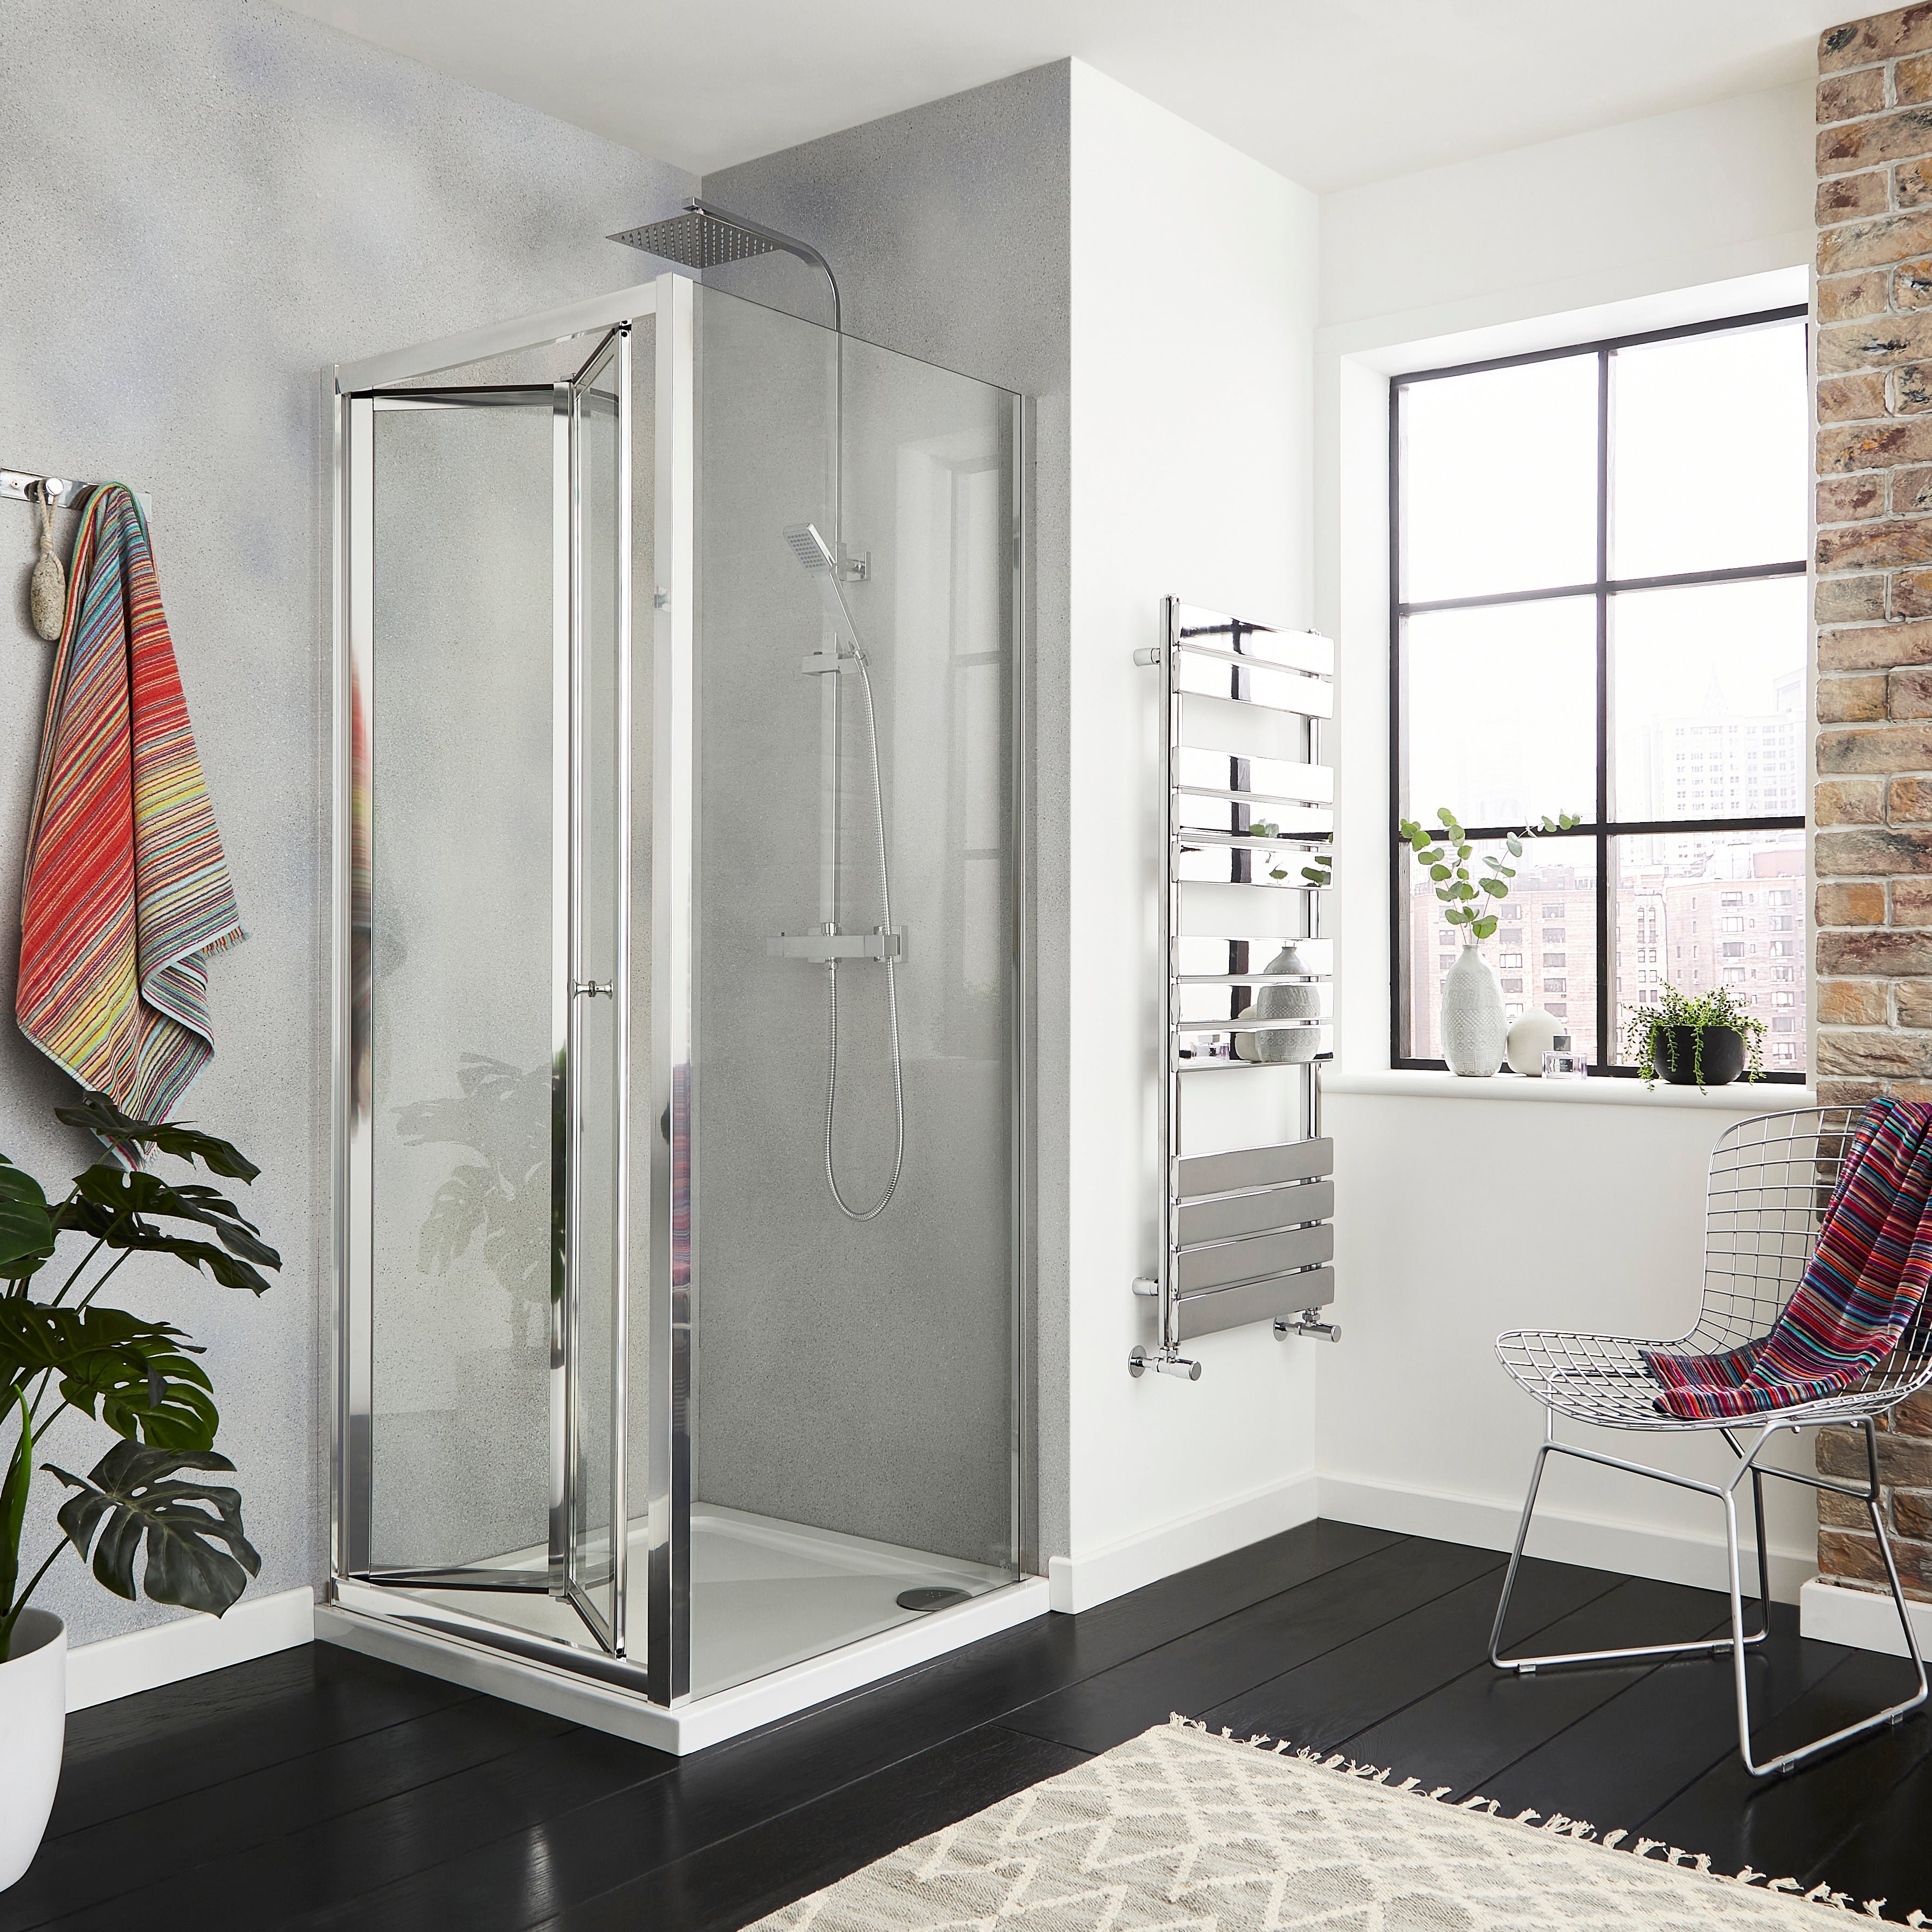 Enhance Your Bathroom with Kv6 Frameless Side Panel Shower Enclosures